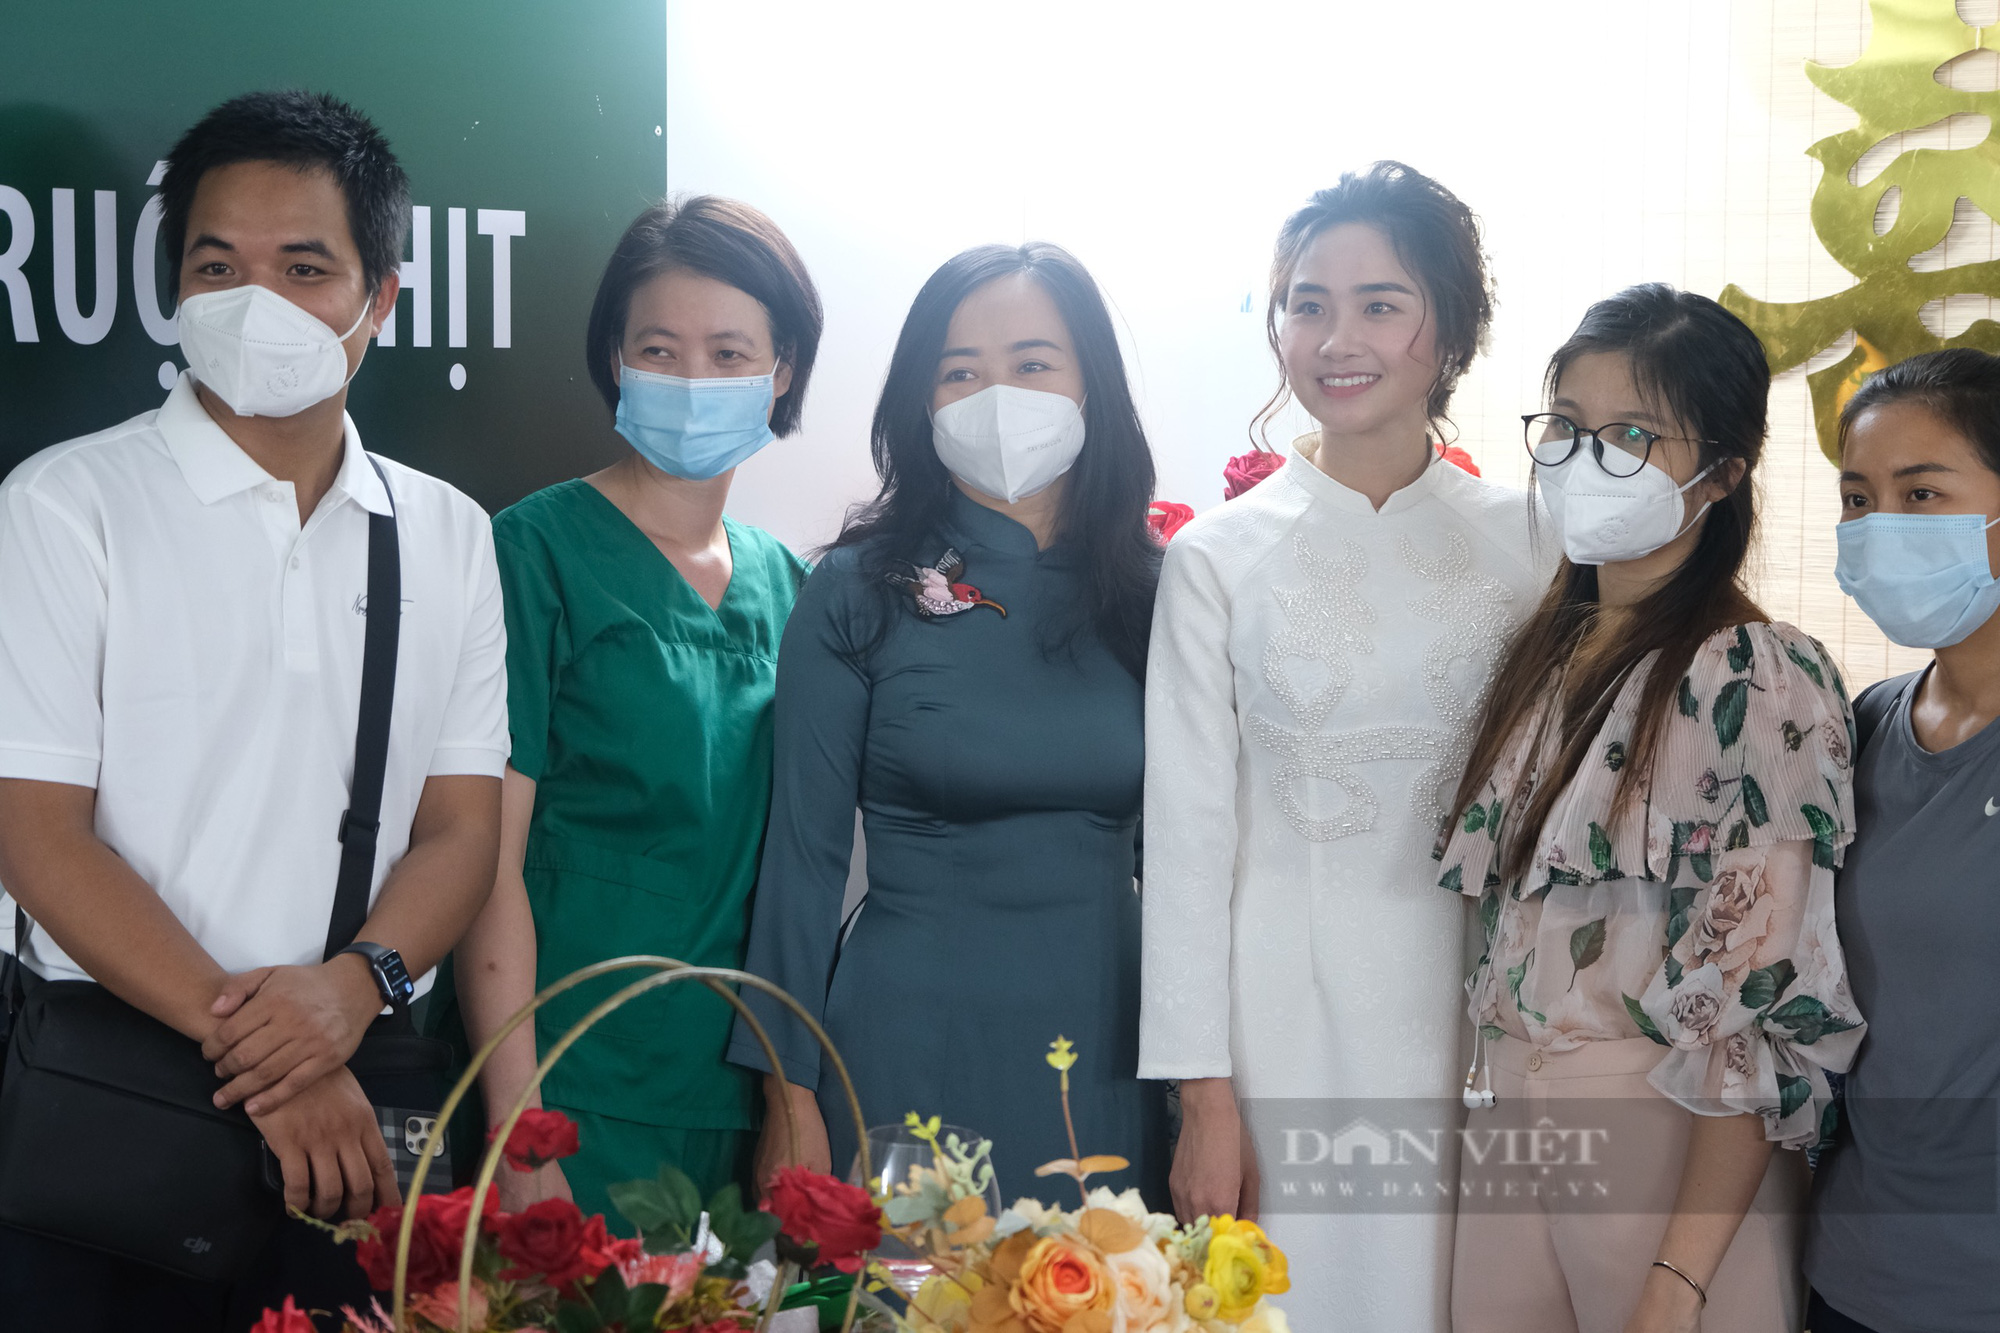 Xúc động đám cưới online tại bệnh viện dã chiến của cô dâu ở TP.HCM và chú rể ở Hà Nội - Ảnh 10.